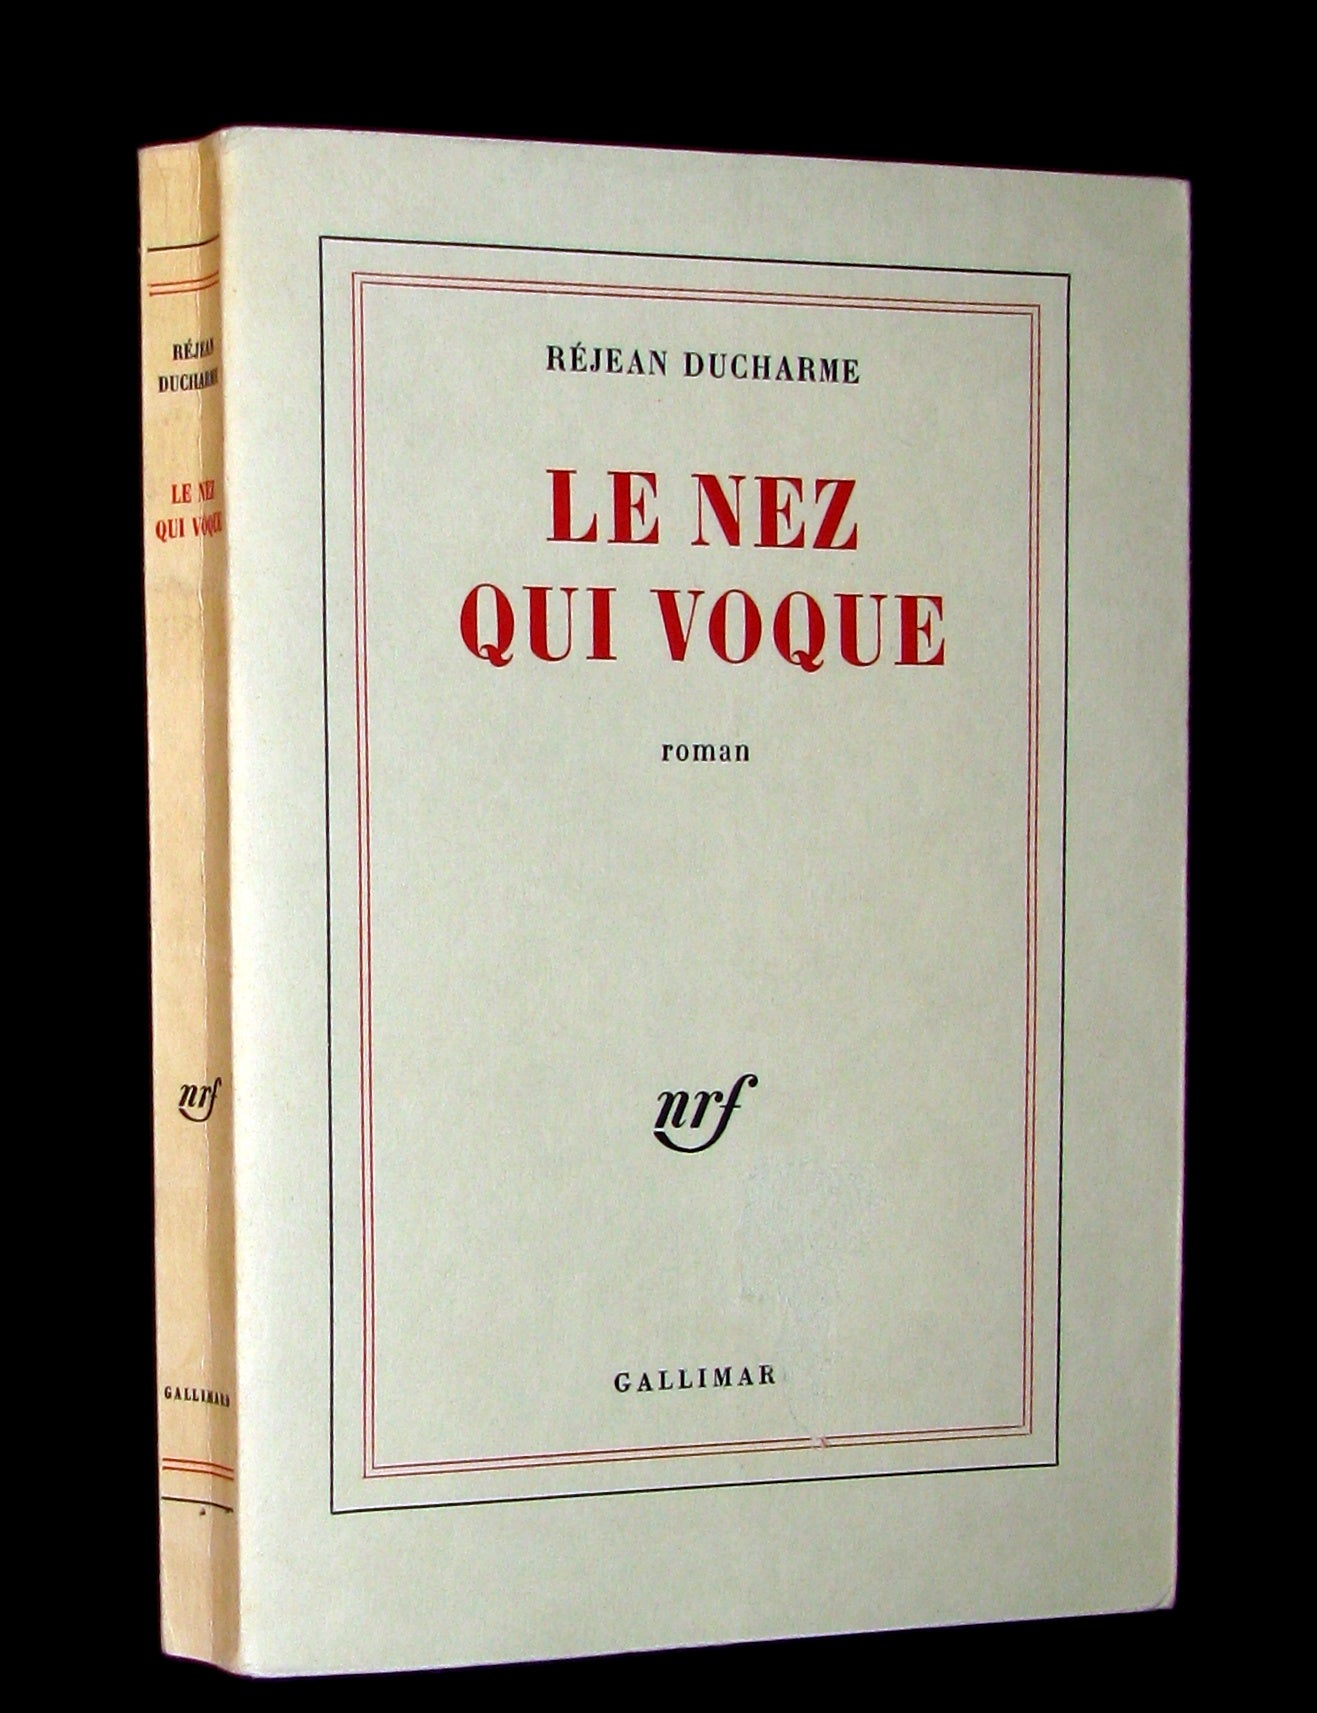 1966 First Edition L'Avalée des avalés DUCHARME – MFLIBRA - Antique Books